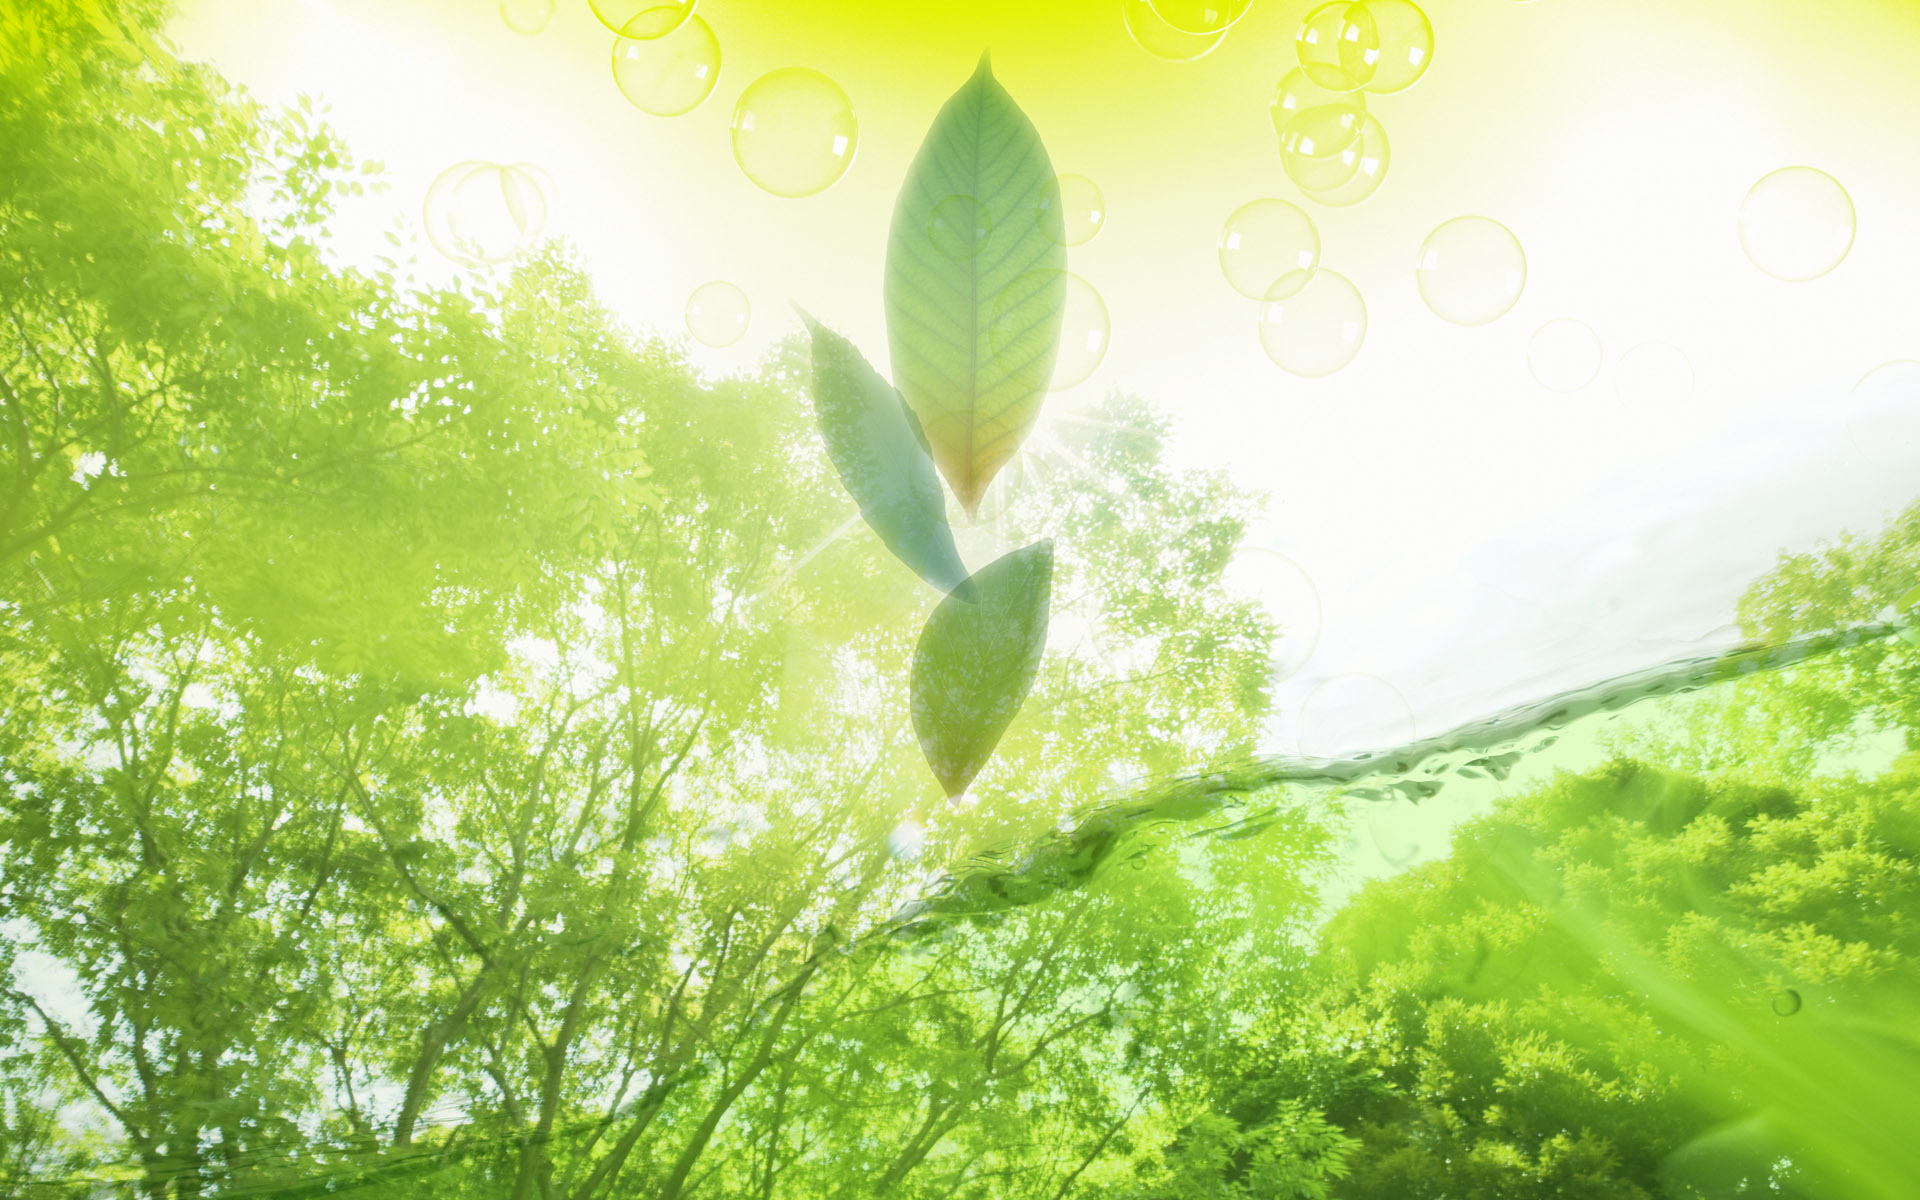 Hãy thưởng thức những bức hình nền Artistic Leaf Wallpaper cho máy tính của bạn. Màu xanh lá cây sẽ đưa bạn đến thiên nhiên nguyên thủy và cảm nhận được sự yên bình và thanh tịnh. Với những thiết kế tinh tế và độc đáo, bạn sẽ có được một không gian làm việc hoàn hảo với một bức tranh nền tuyệt đẹp.